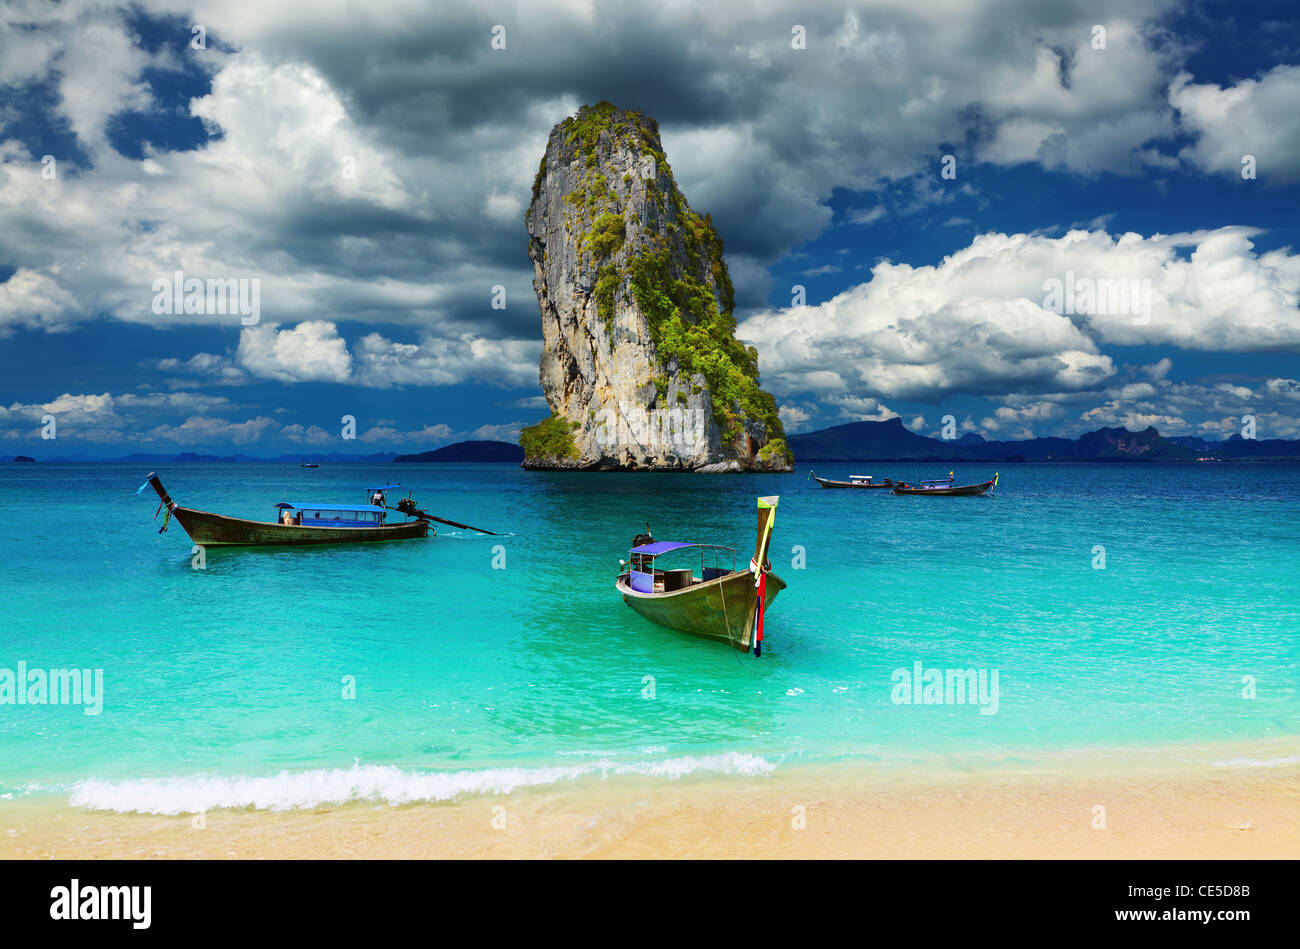 Bateaux à longue queue, la plage tropicale, la mer d'Andaman, Thaïlande Banque D'Images